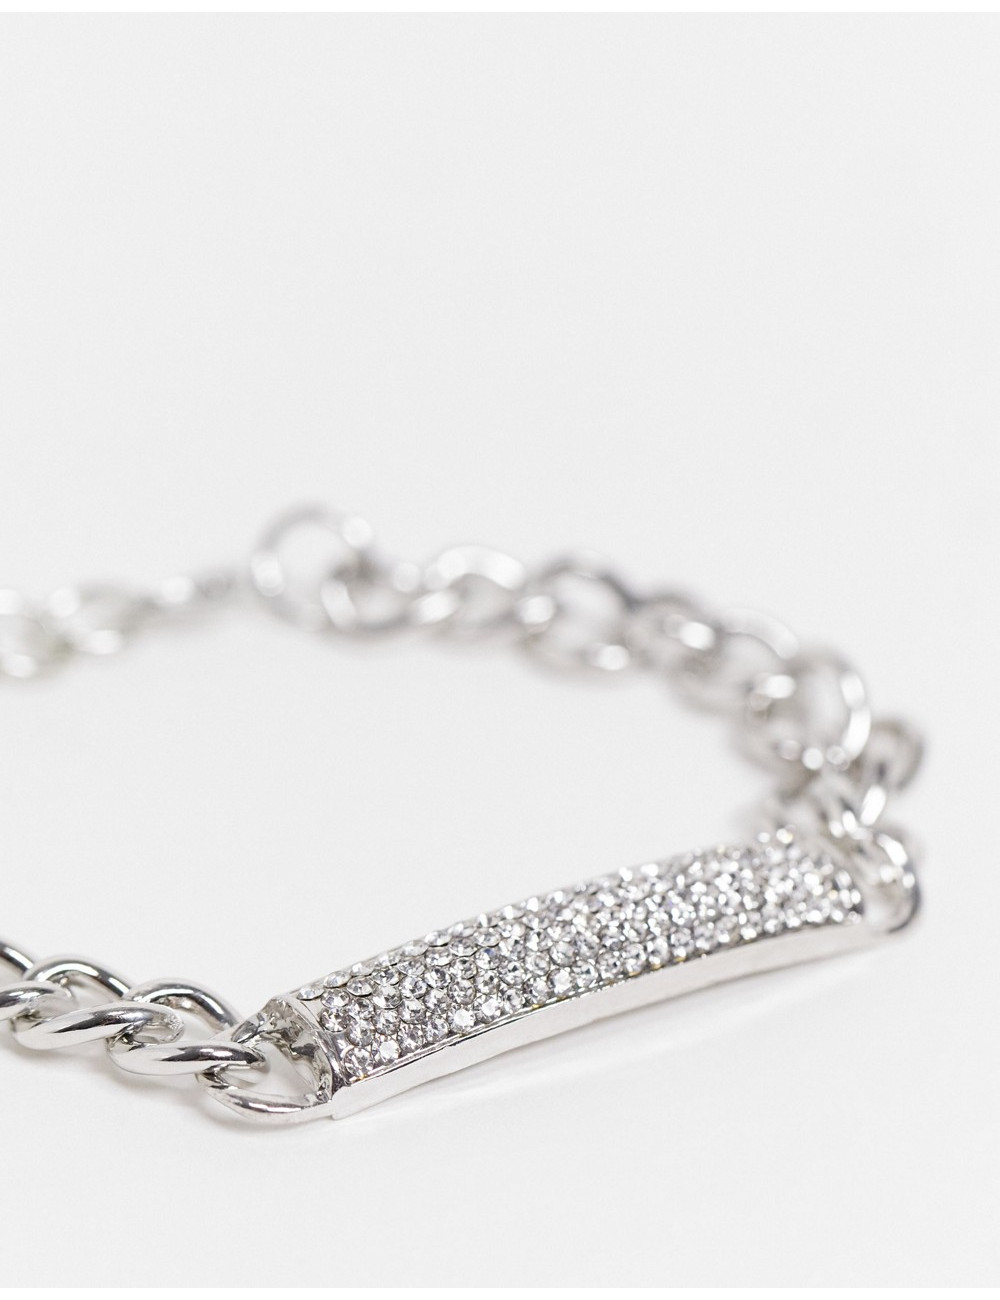 EGO chunky chain bracelet...